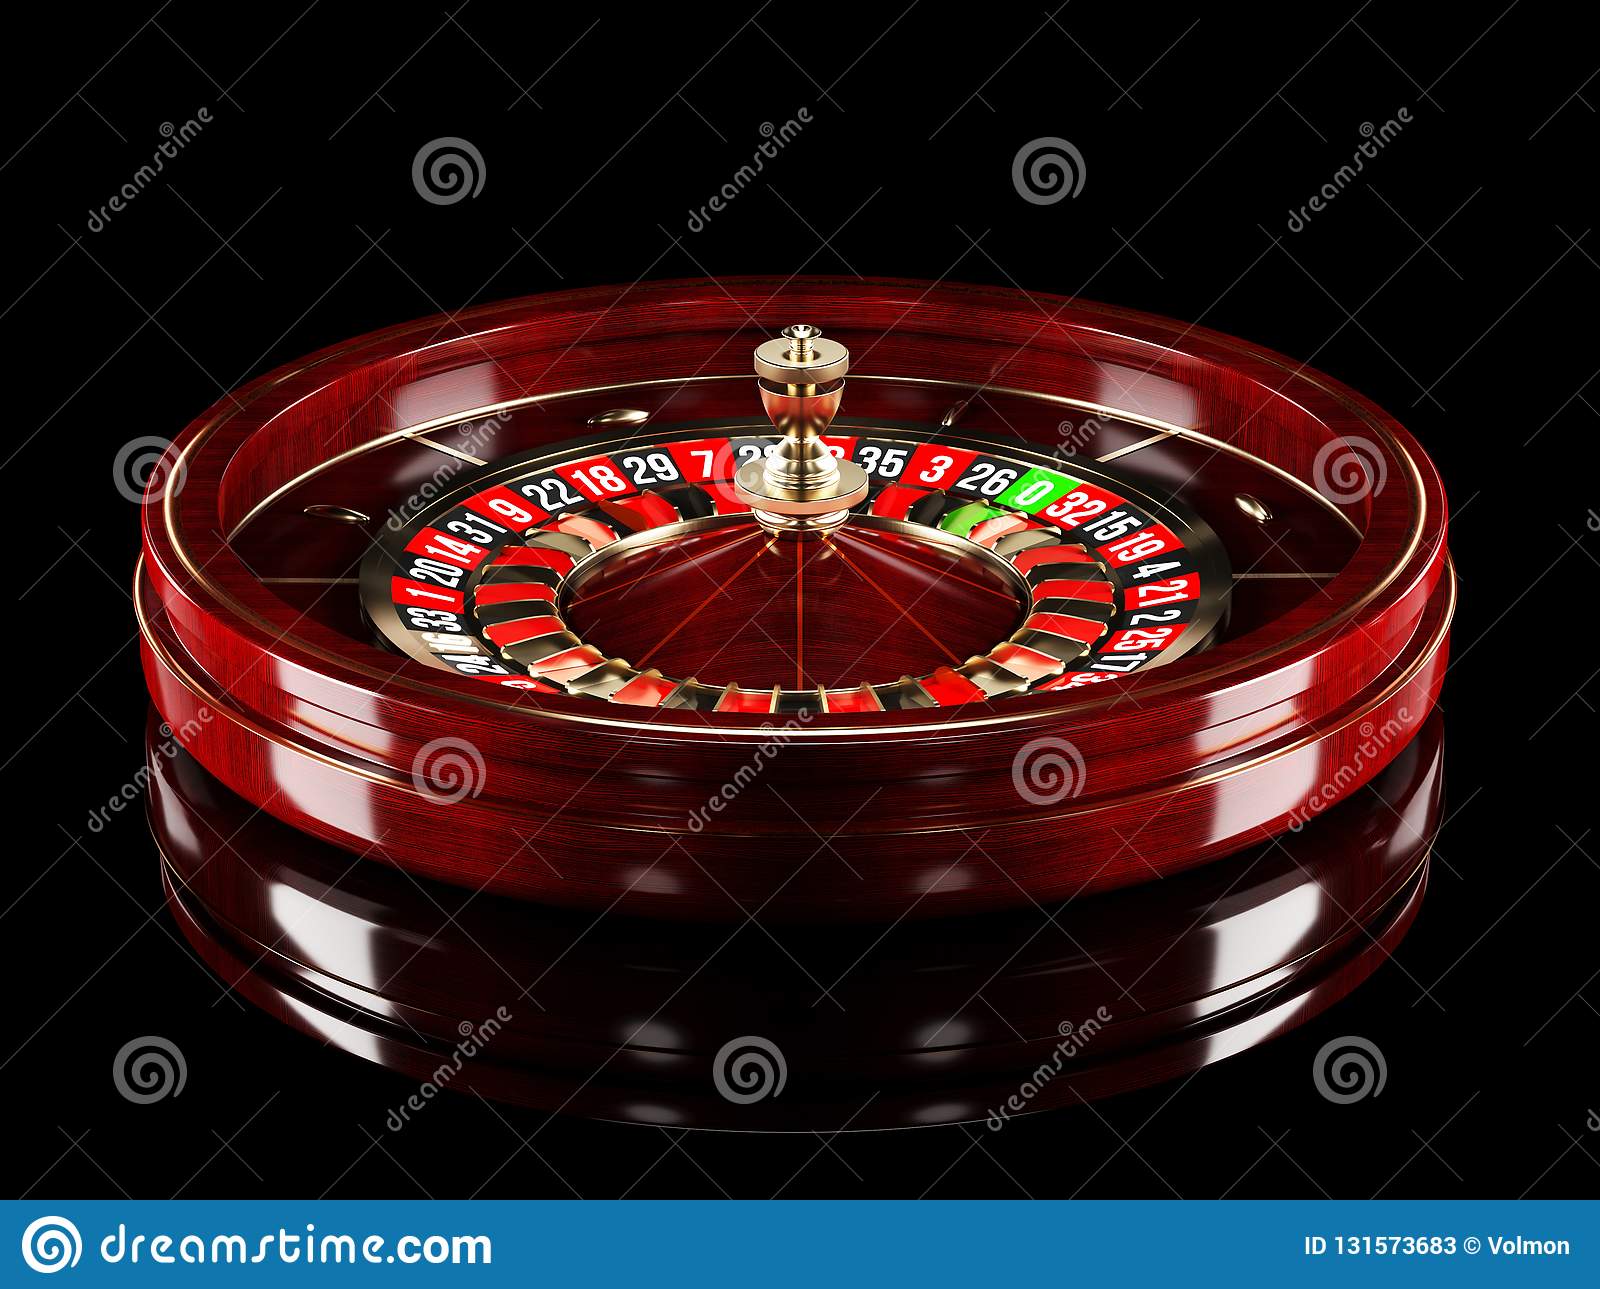 Casino slots machines near me